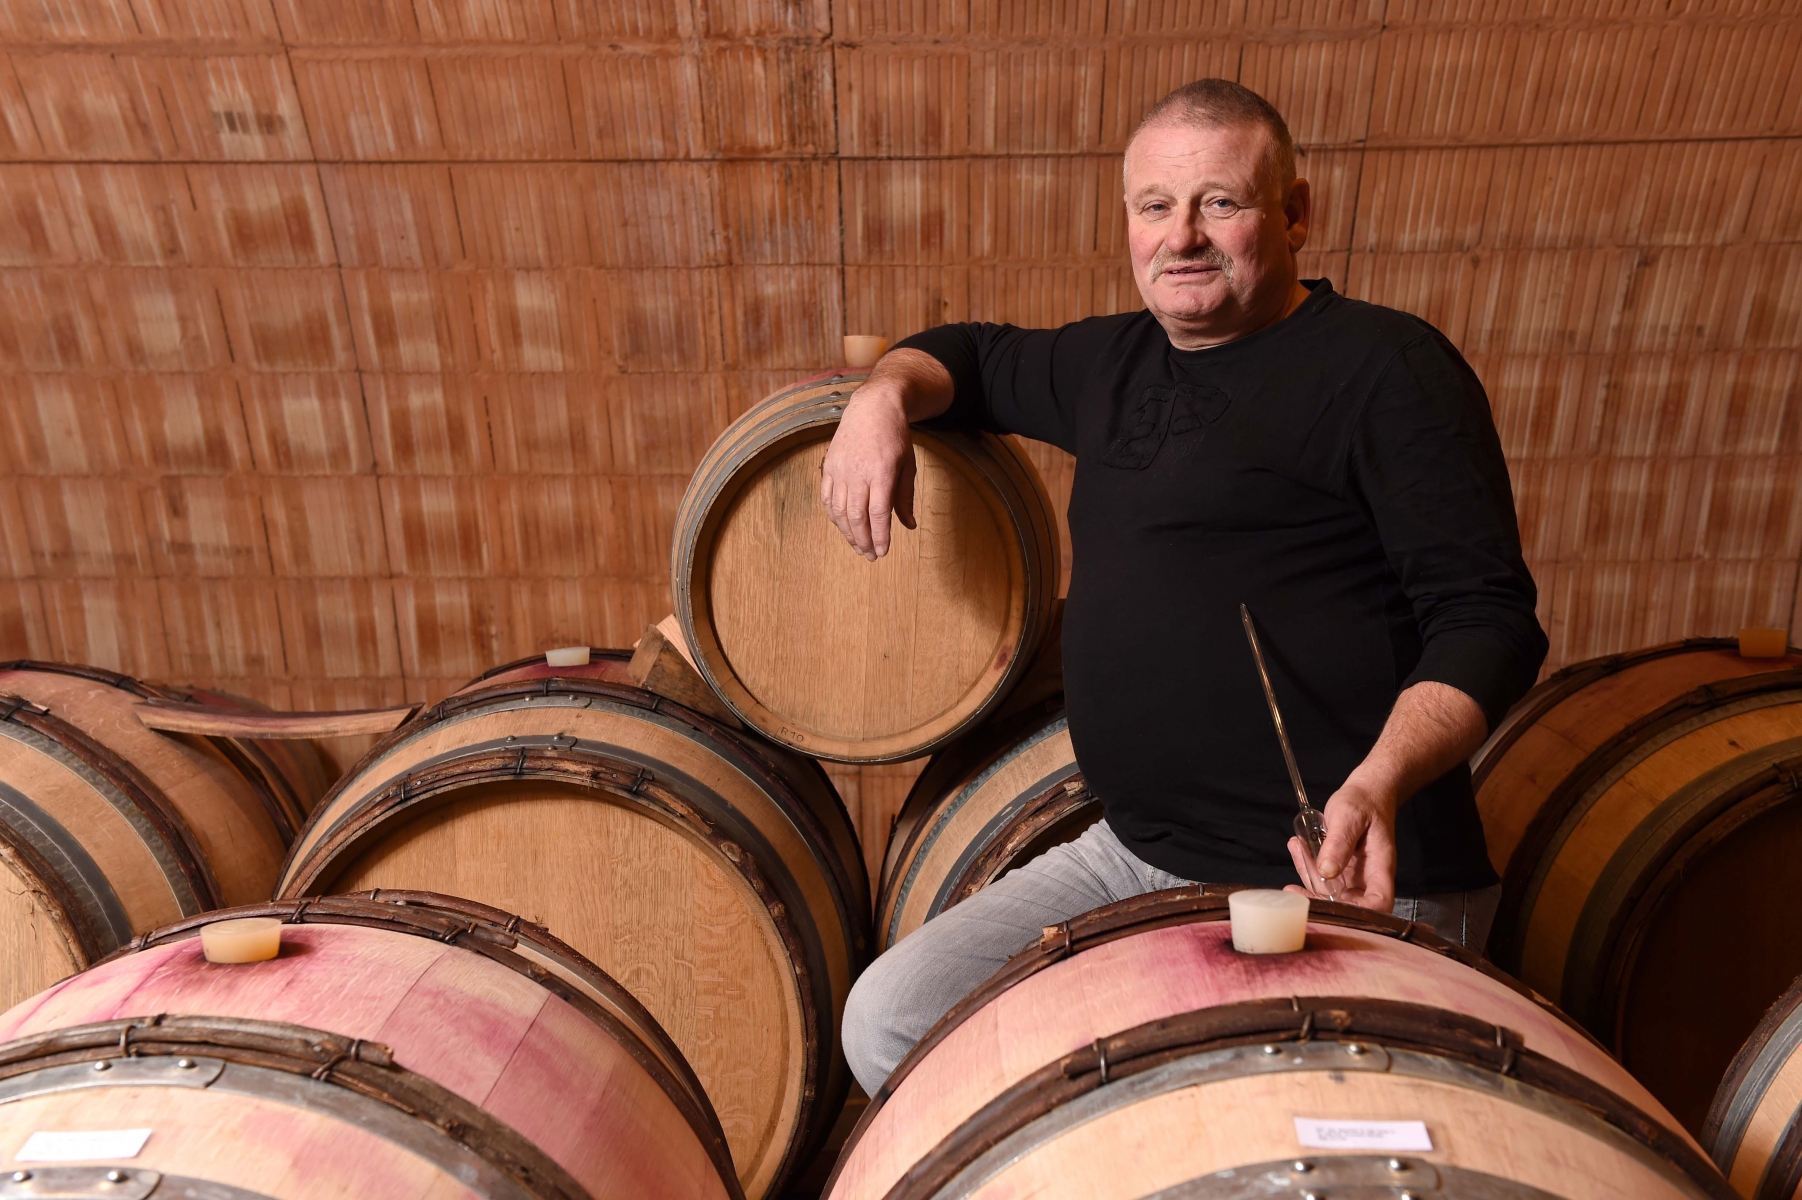 Pour fêter son 40e millésime, Didier Joris, célèbre vigneron éleveur de Chamoson a produit un fendant haut de gamme en barrique et en a calculé le prix au centime près.